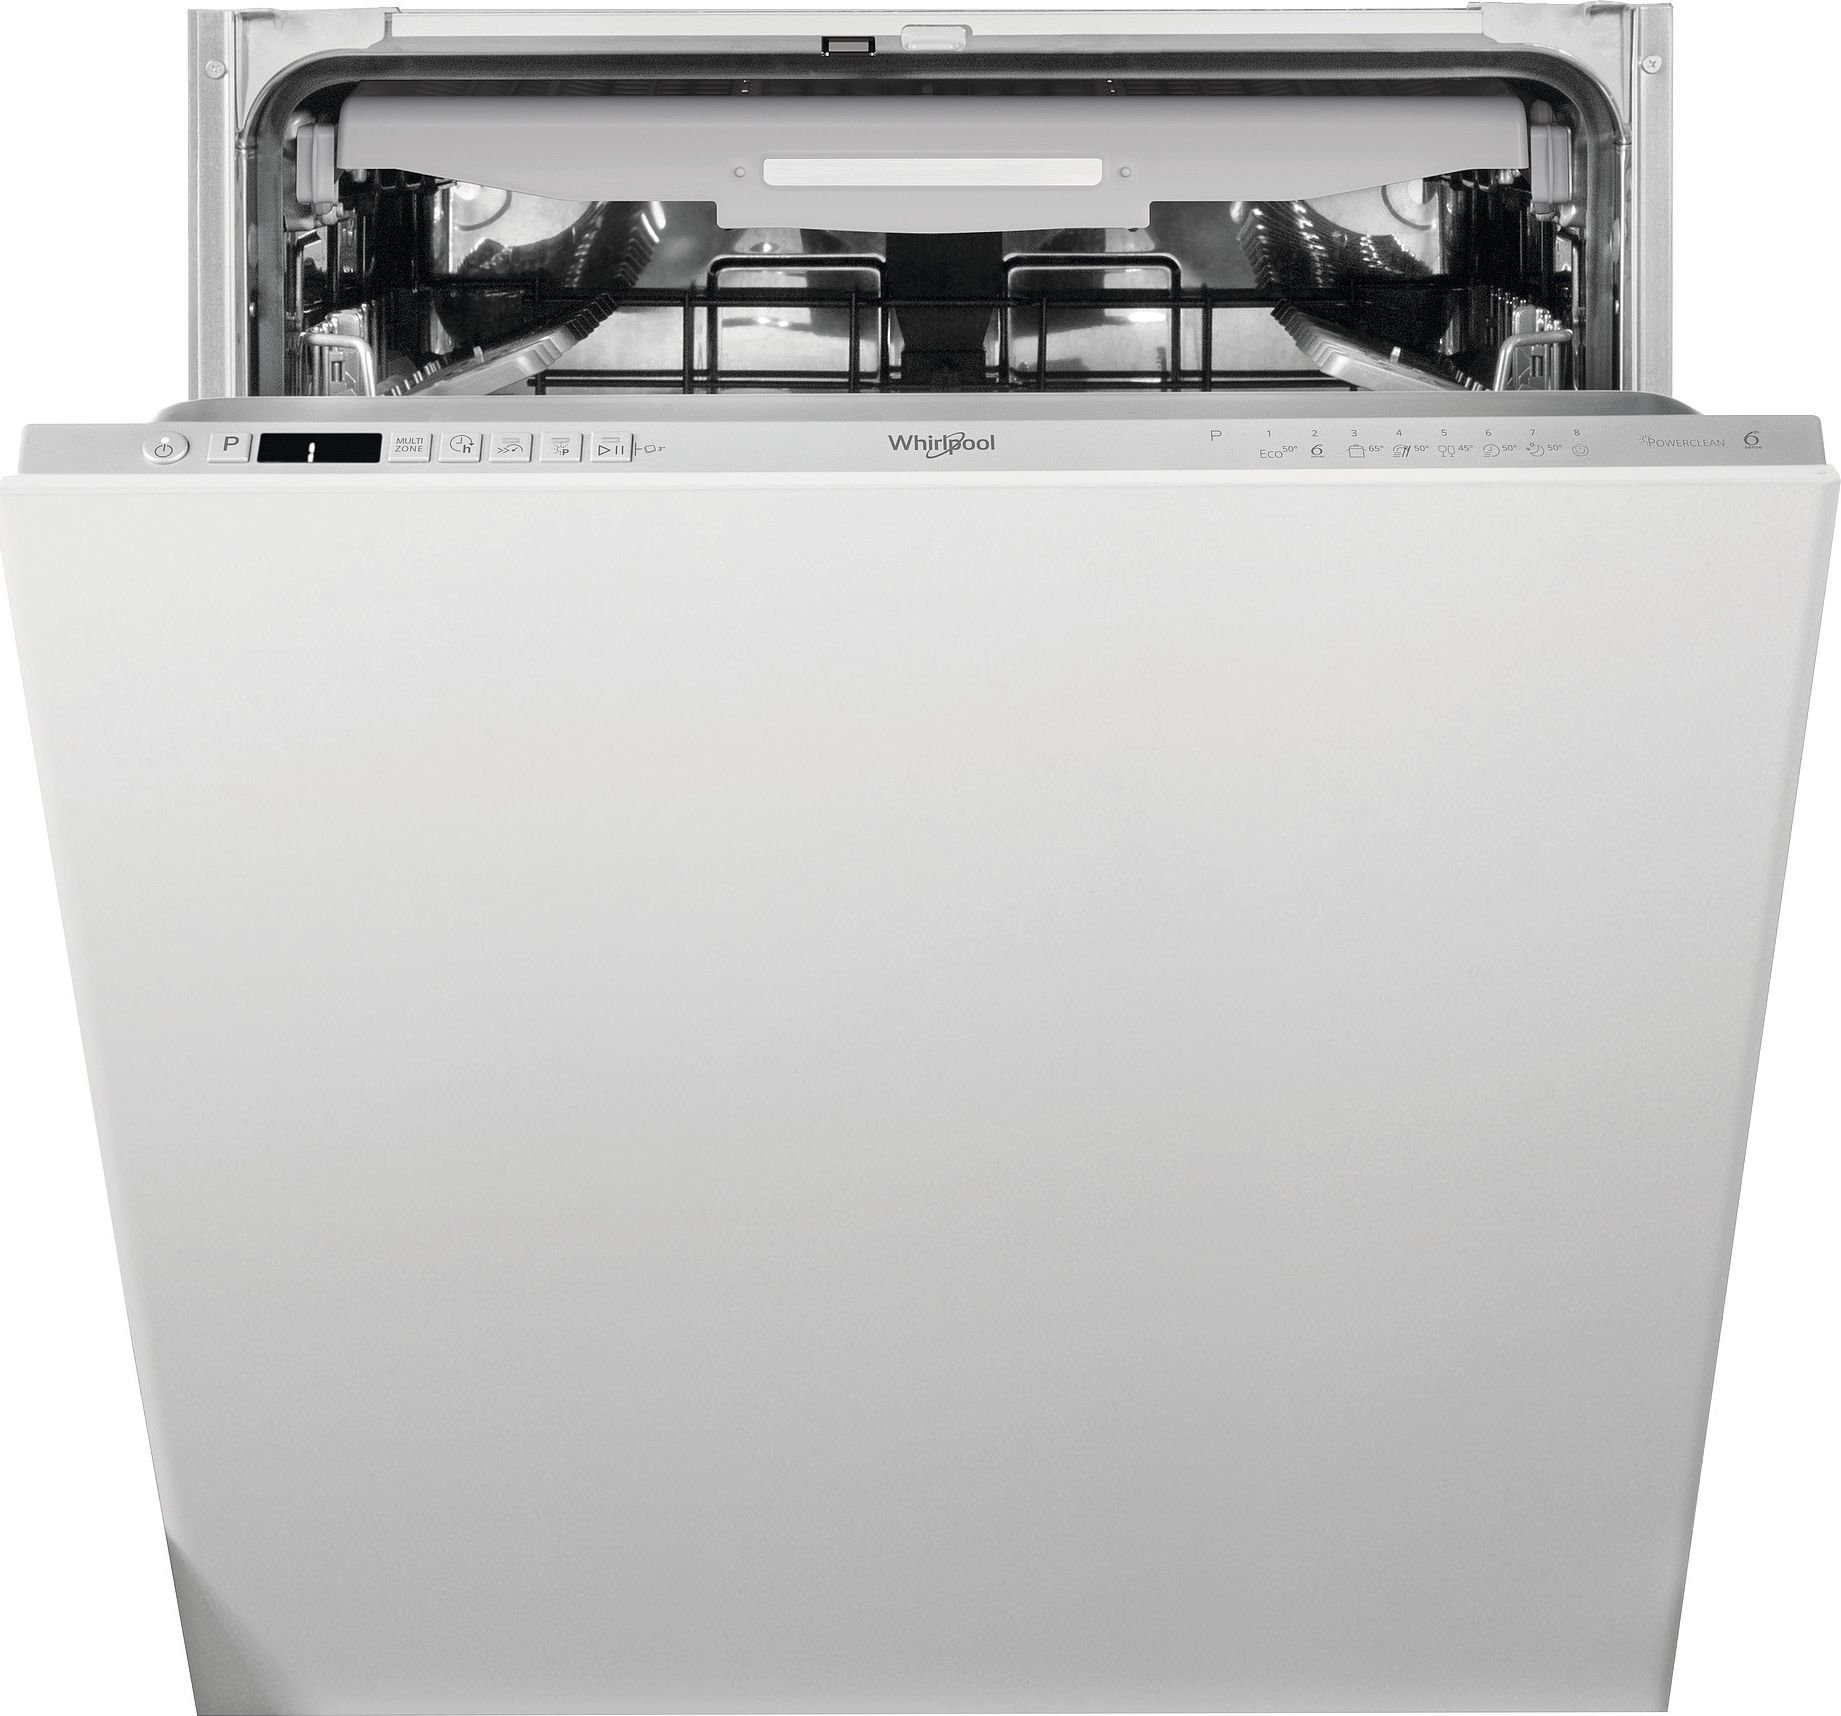 Masini de spalat vase incorporabile - Mașină de spălat vase incorporabila  Whirlpool WIO 3T126 PFE,14 seturi,46 dB,60 cm